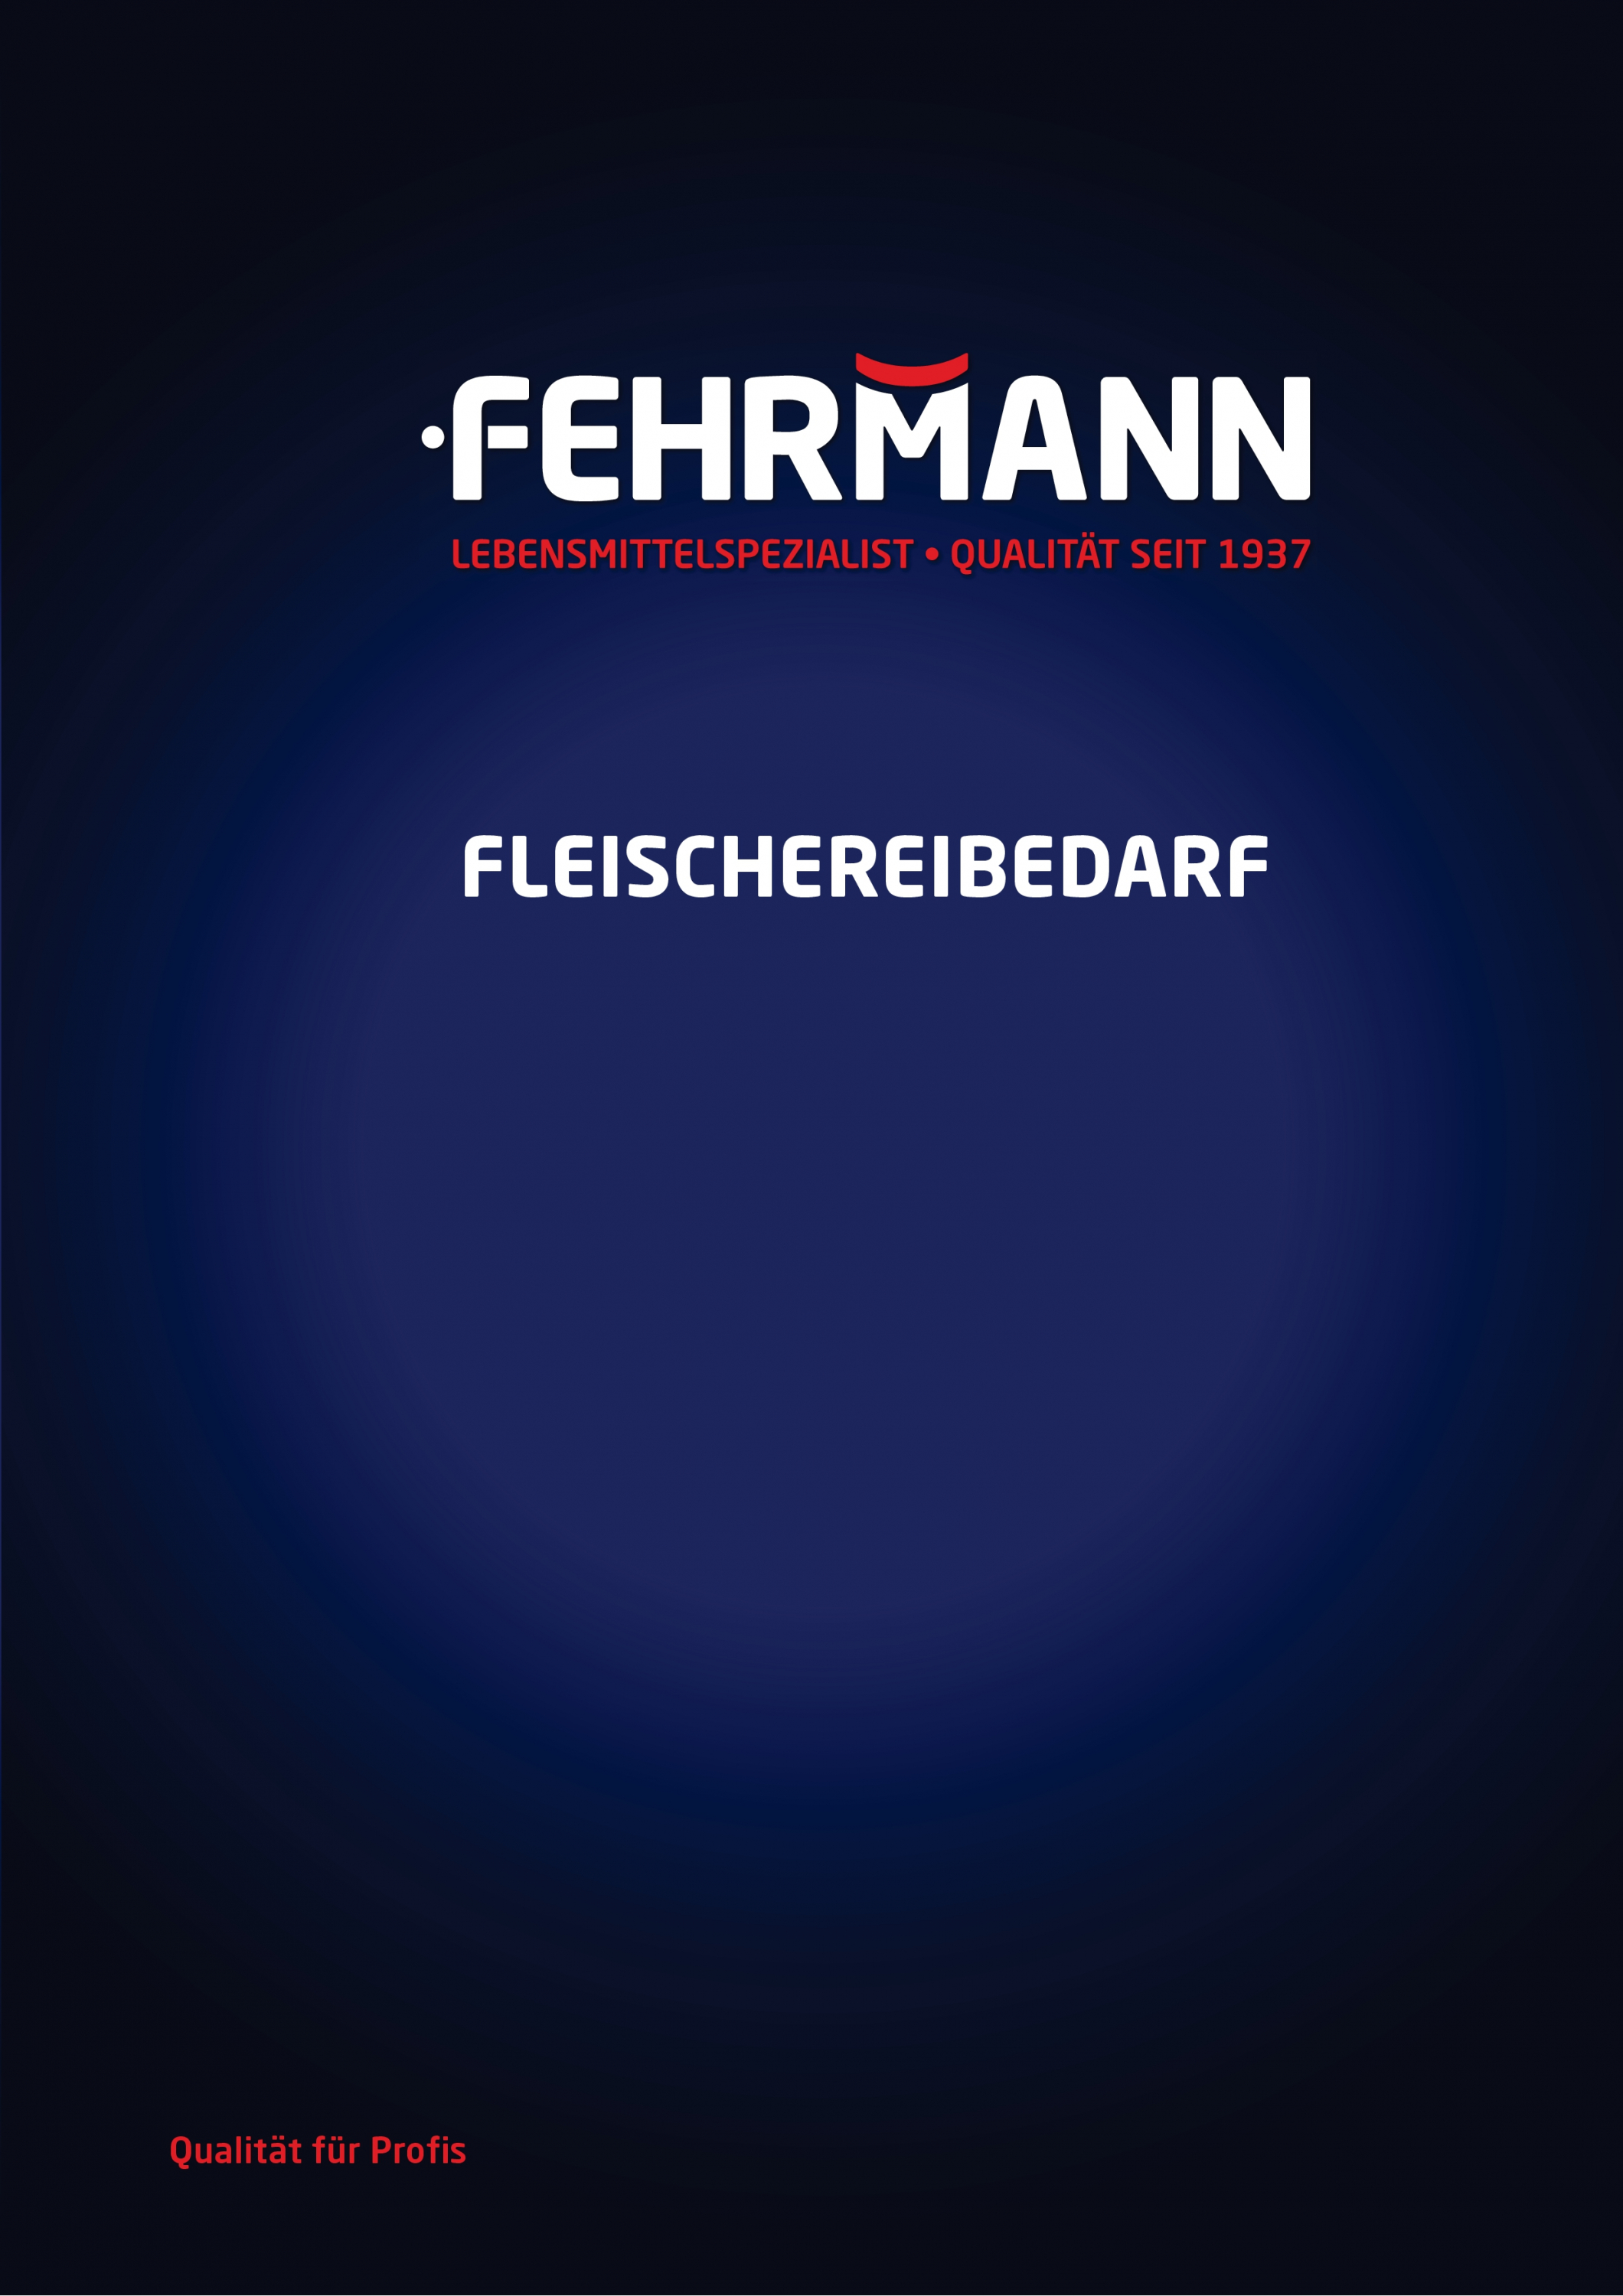 Fehrmann Fleischereibedarf - Katalog 